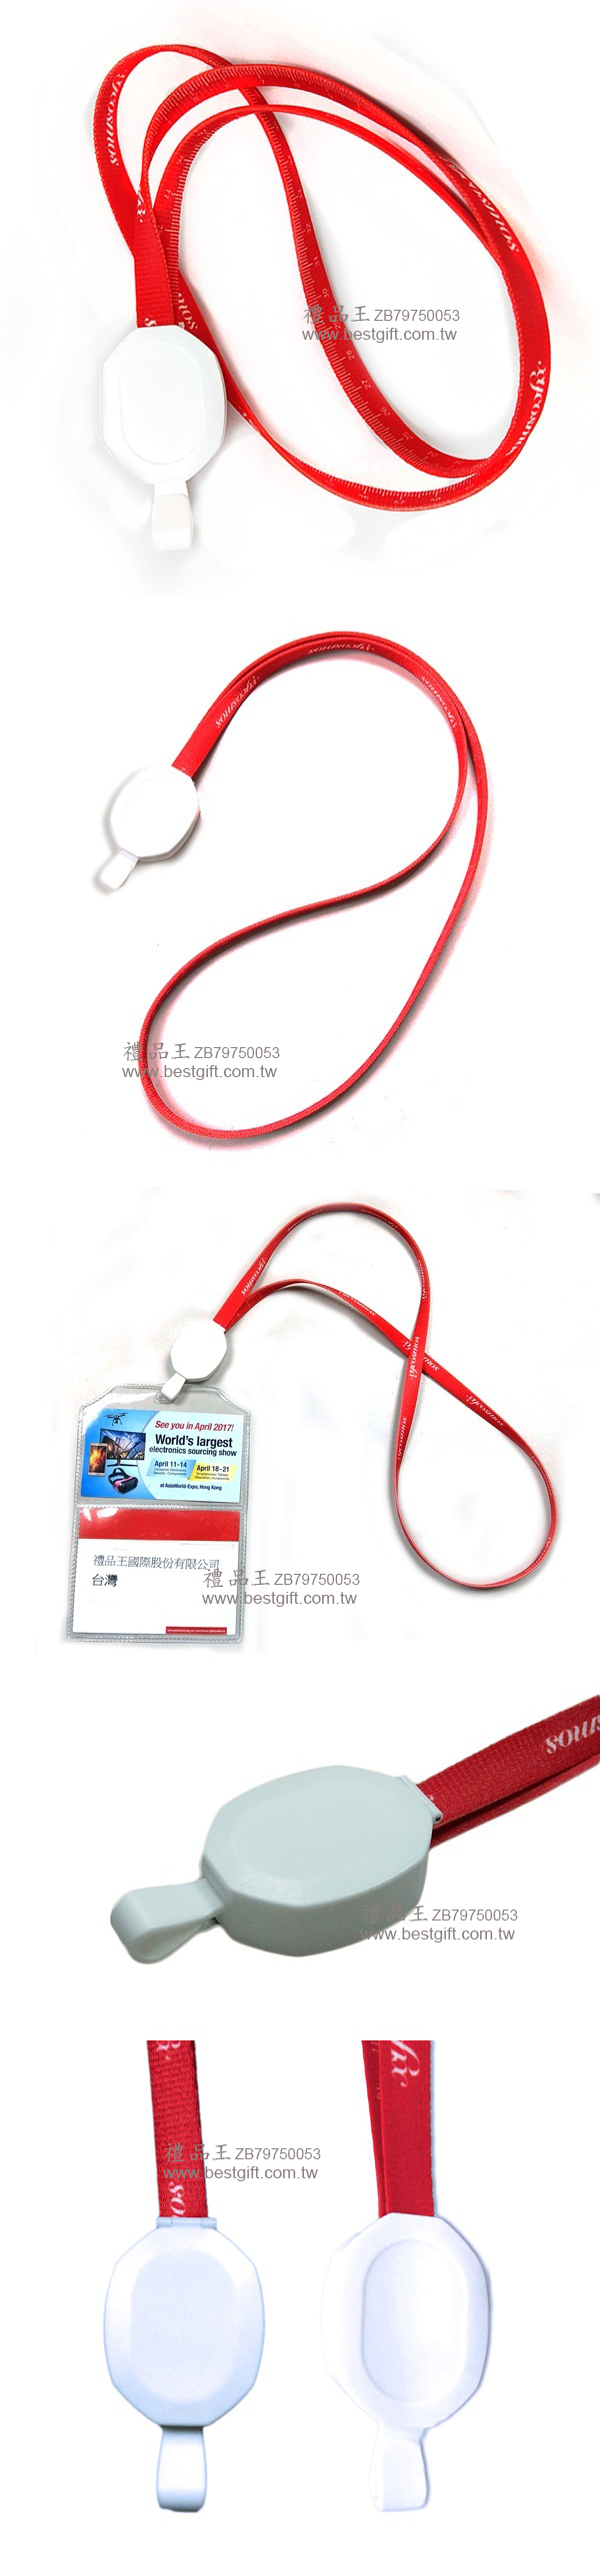 USBMicro5P數據充電線識別證帶     商品貨號: ZB79750053 